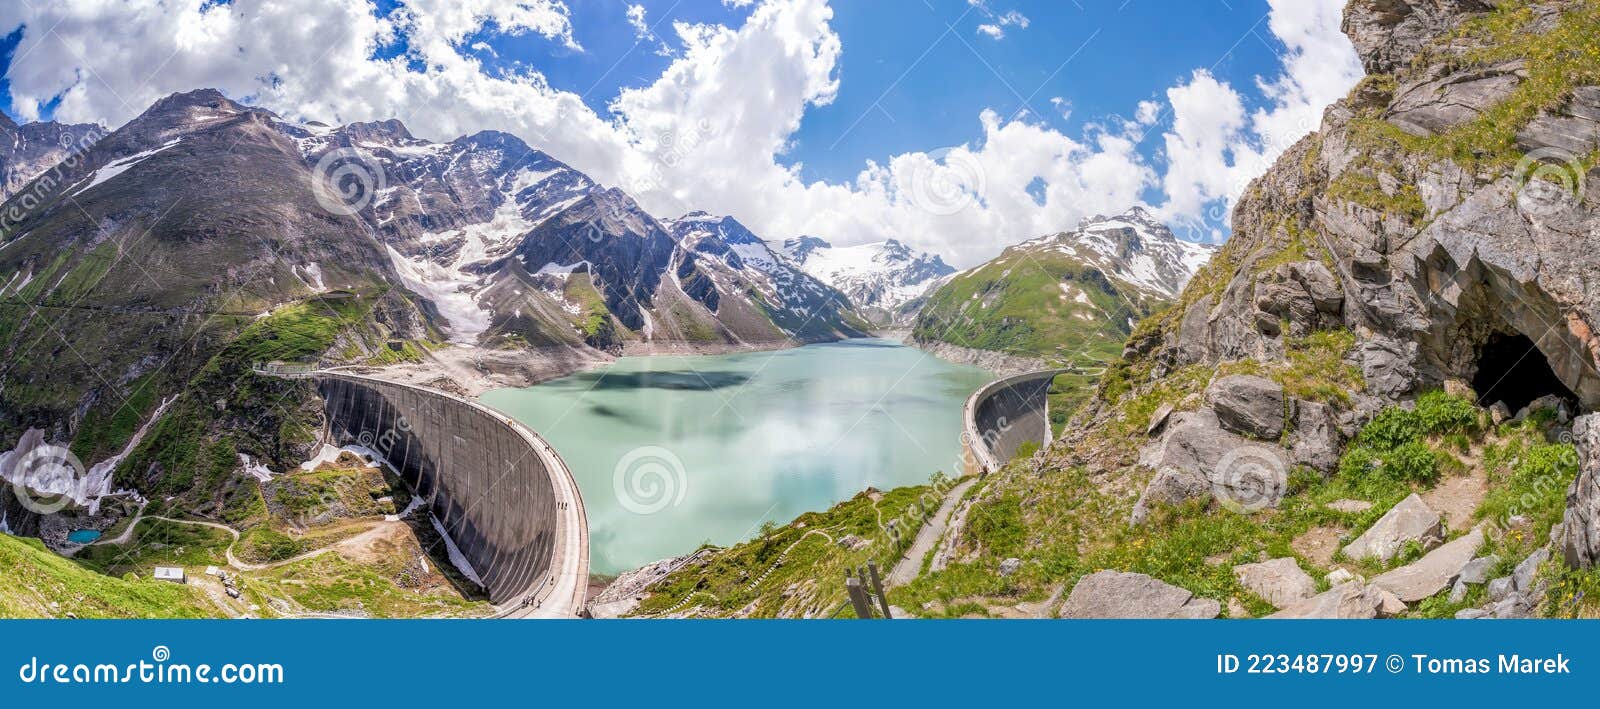 kaprun high mountain reservoirs - zell am see-kaprun with beautiful nature,salcburger land, austrian alps